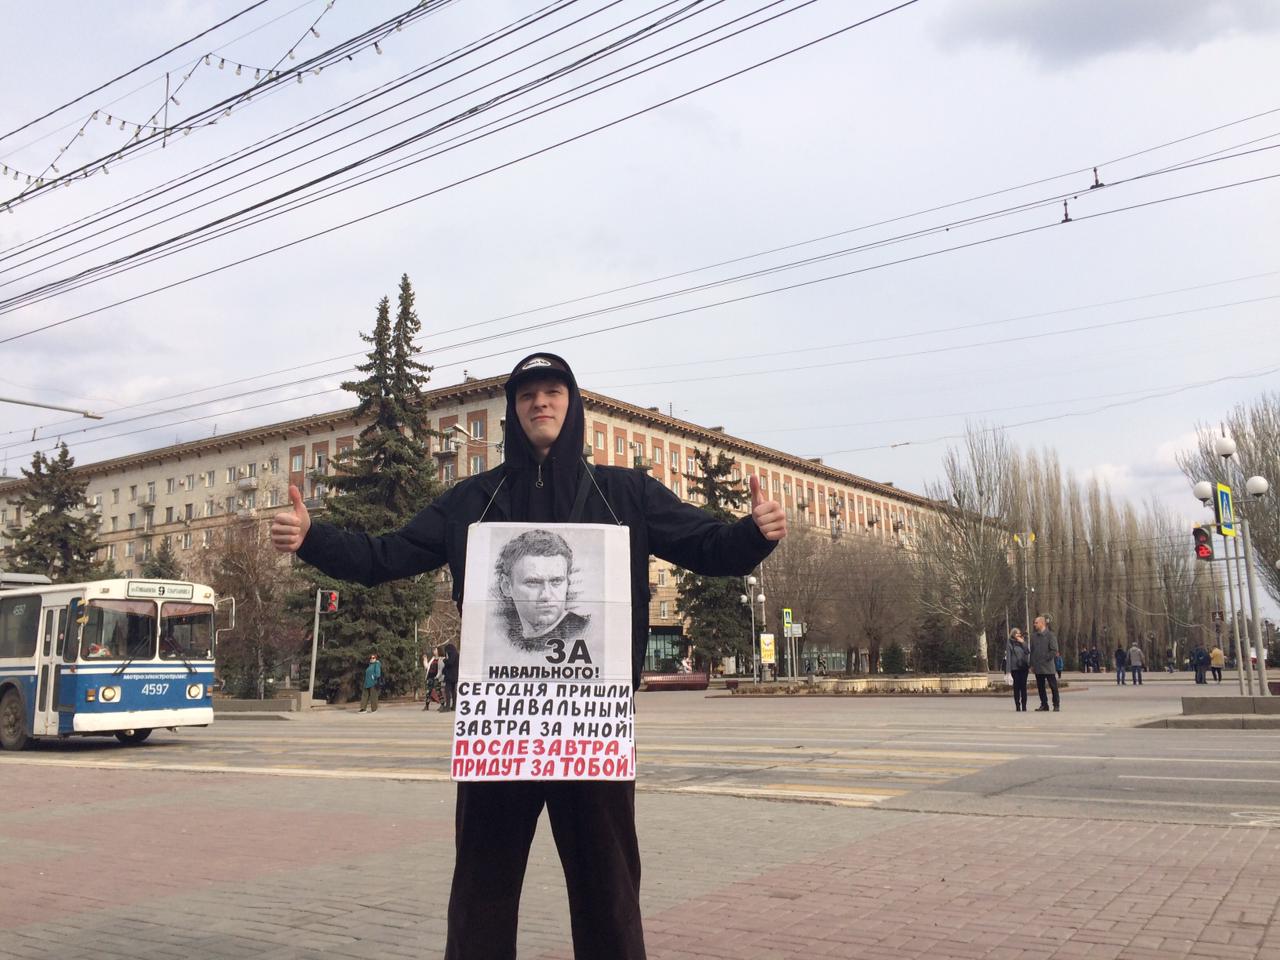 Прохожий с плакатом пикетчиков в Волгограде. 3 апреля 2021 года. Фото Татьяны Филимоновой для "Кавказского узла".